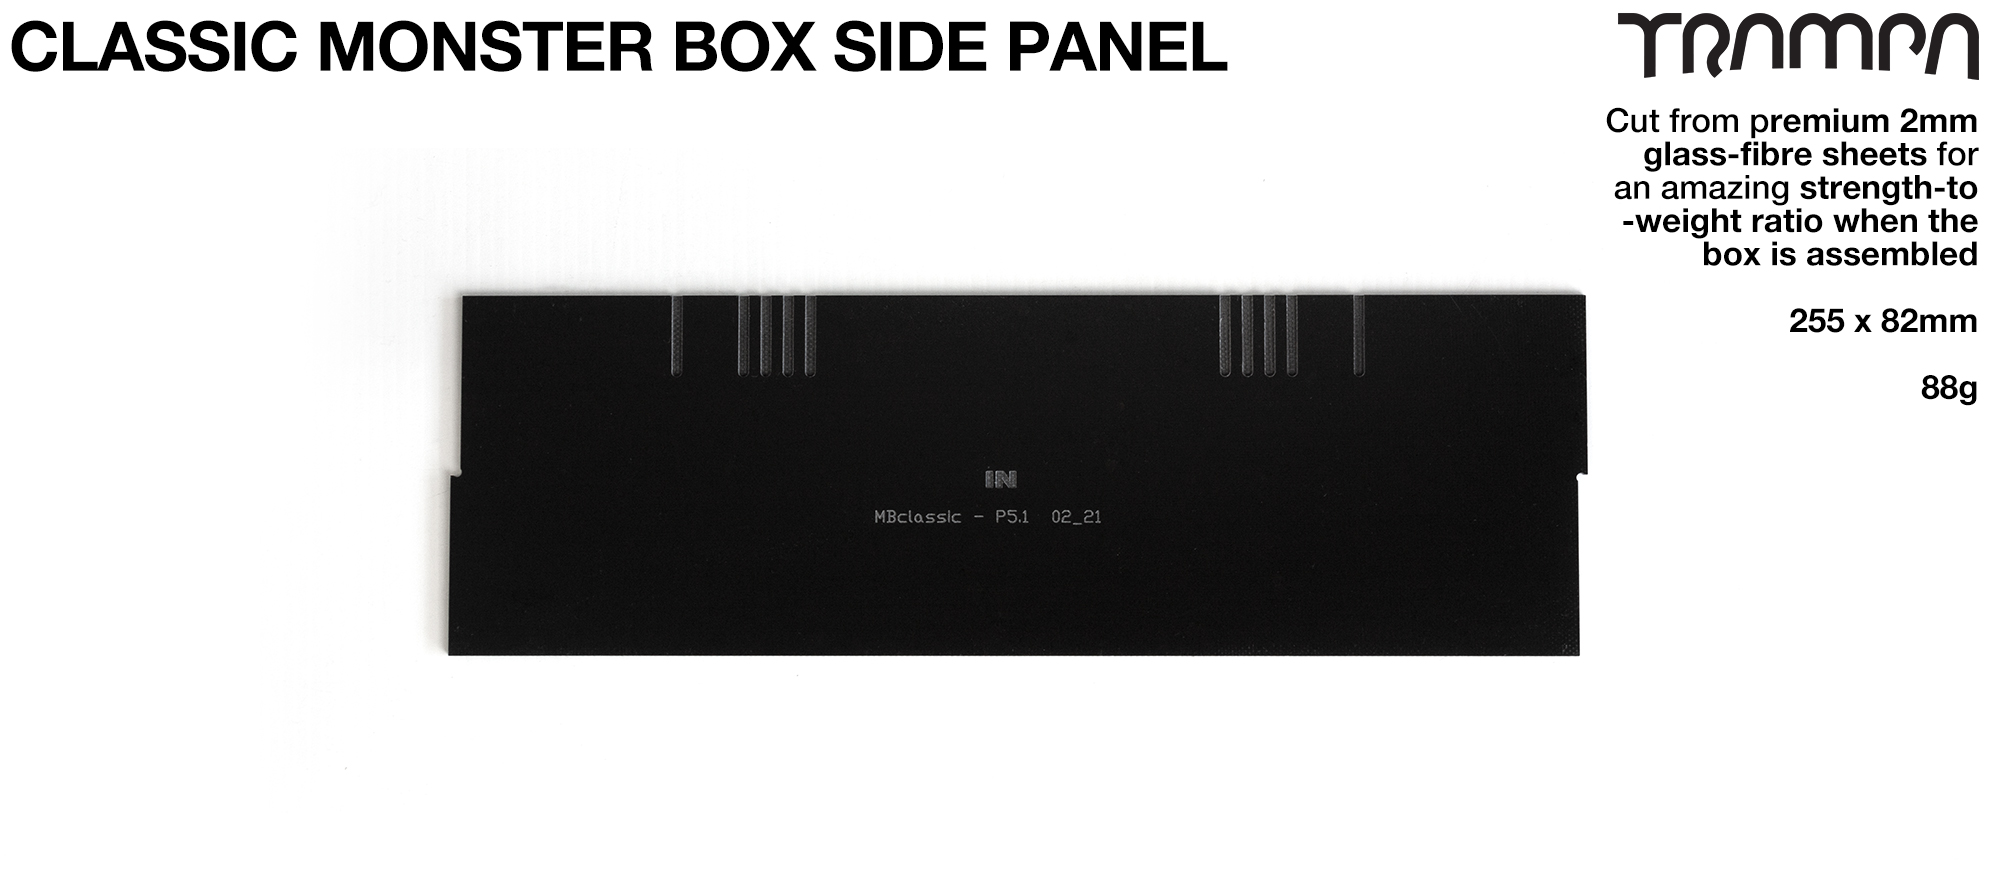 CLASSIC MONSTER Box MkV 2mm SIDE PANEL